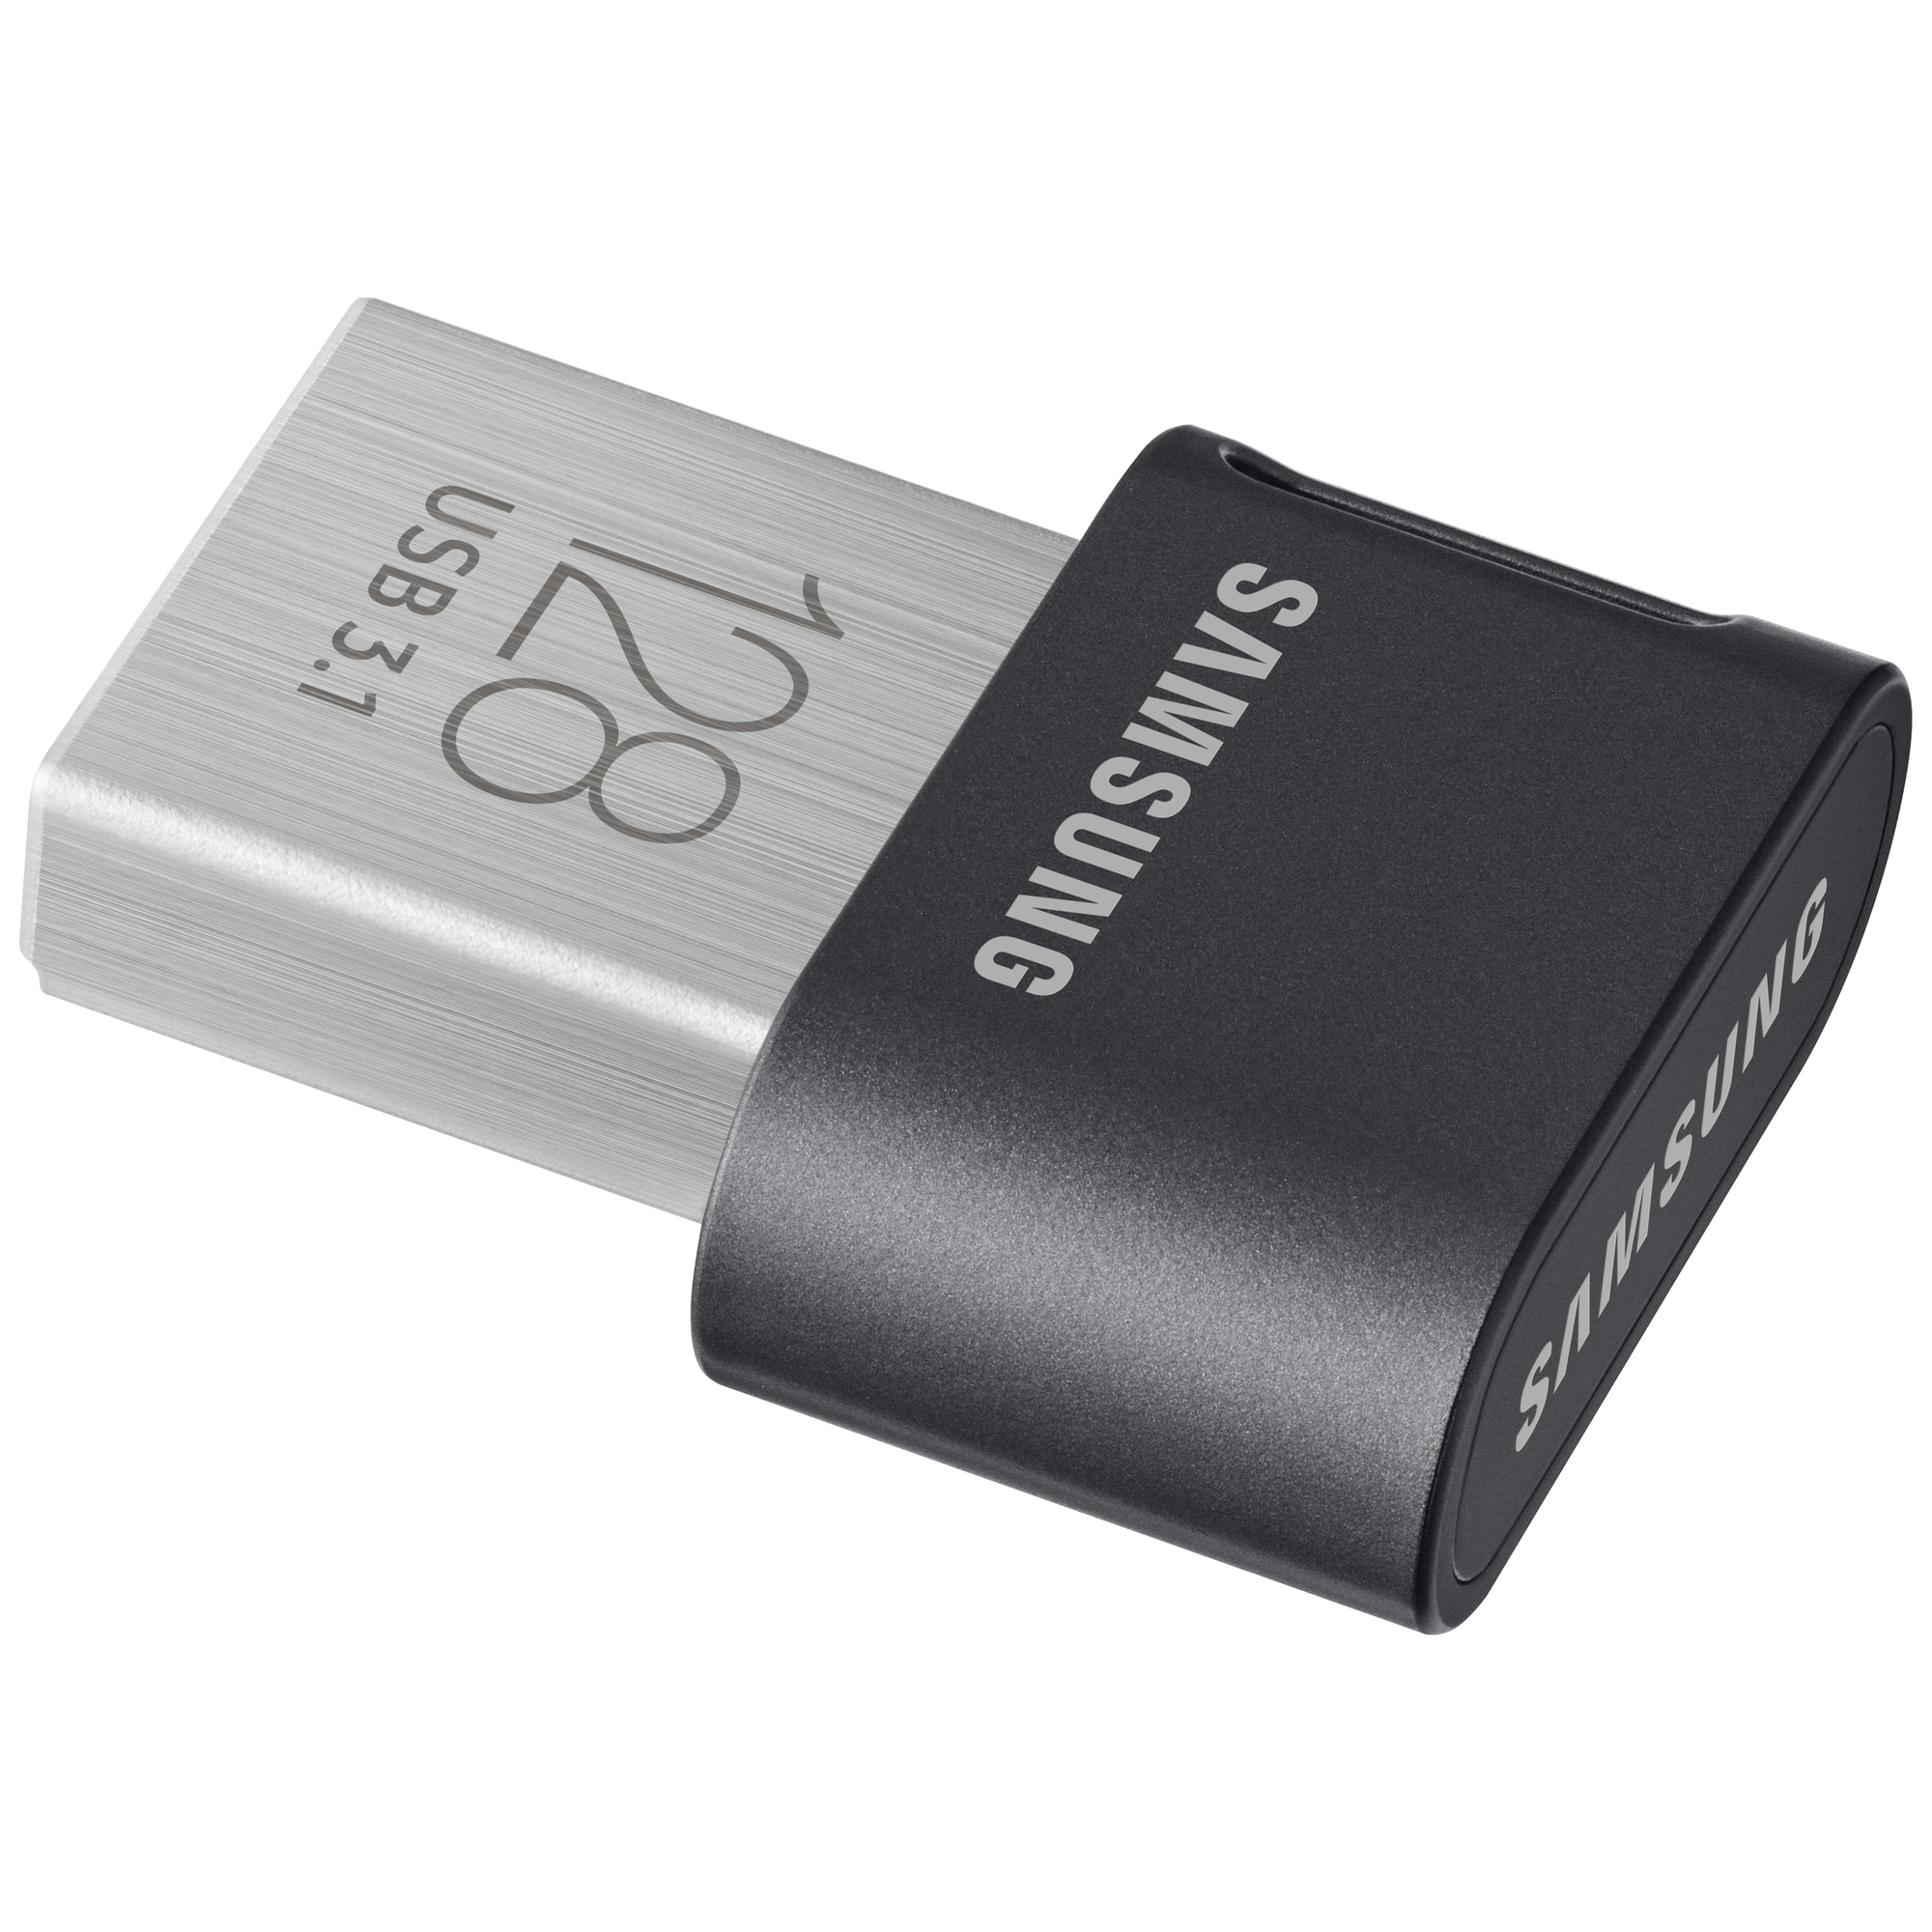 Samsung Fit Plus USB 3.1 minnepenn 128 GB - Elkjøp